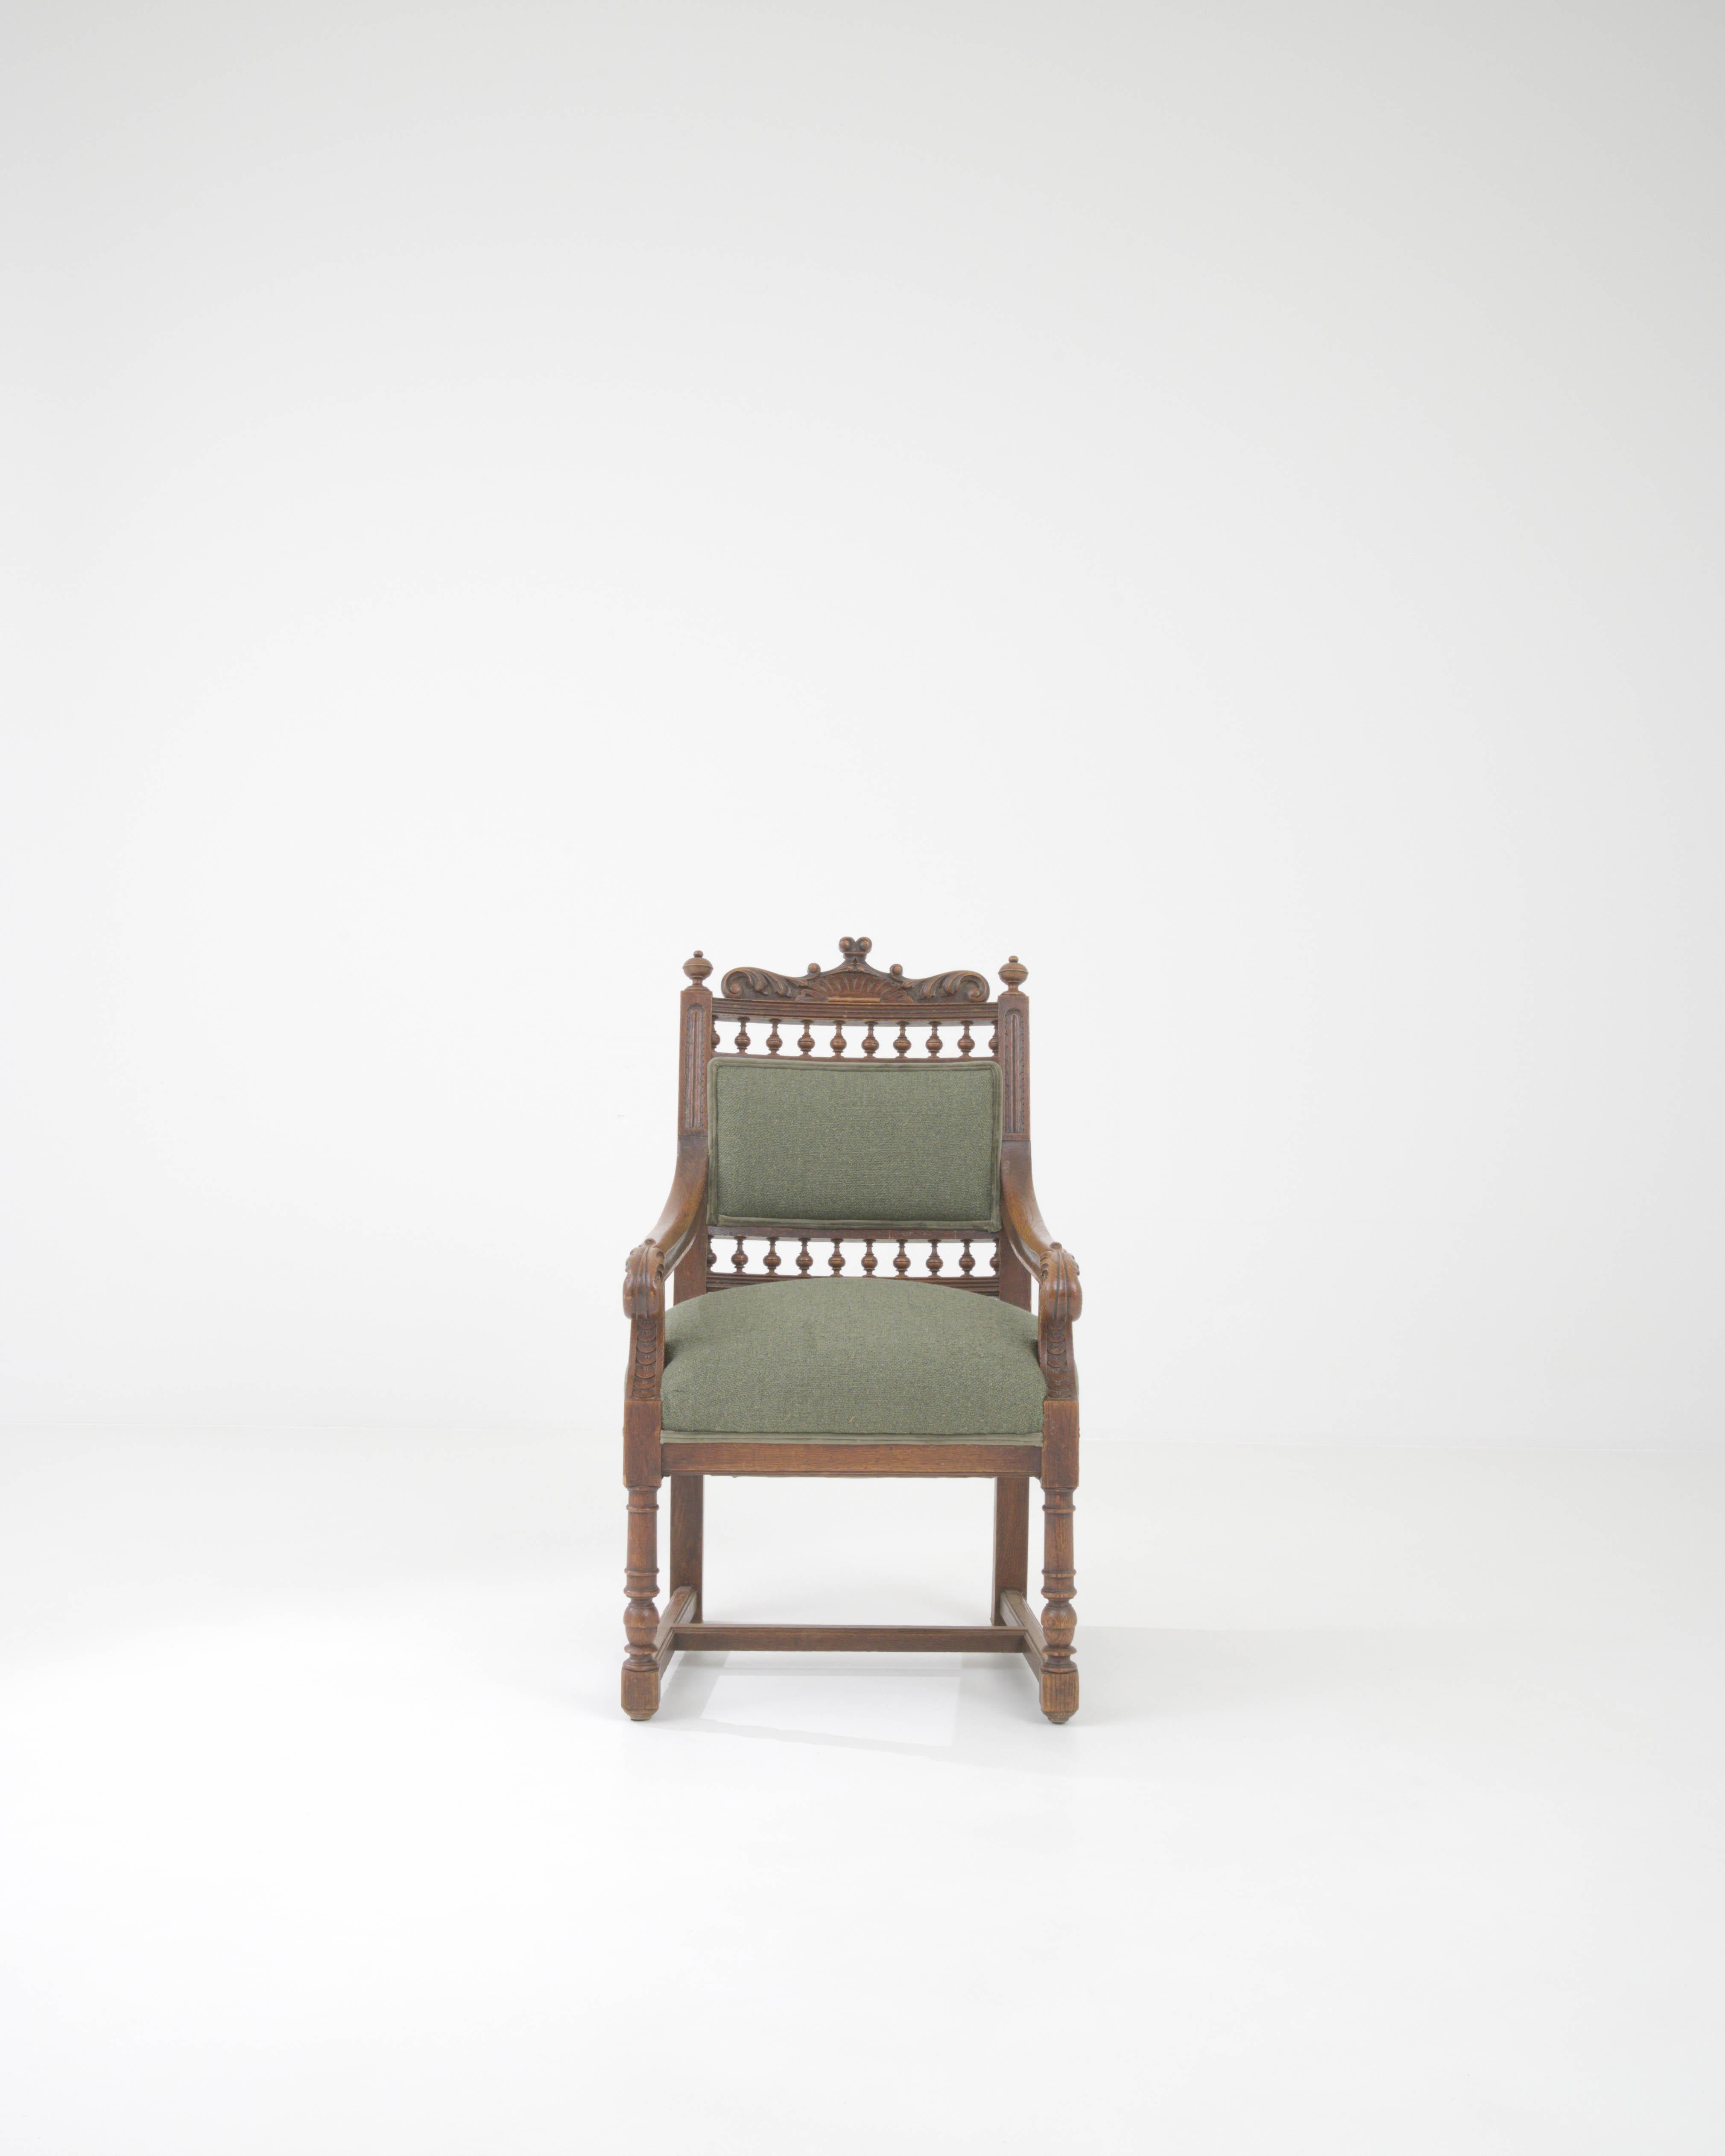 Der exquisite französische Polstersessel aus dem 19. Jahrhundert ist ein Paragon für antike Raffinesse und Komfort. Dieser königliche Sitz ist eine Symphonie aus fachmännischer Handwerkskunst und klassischem Stil, mit reich gedrechselten